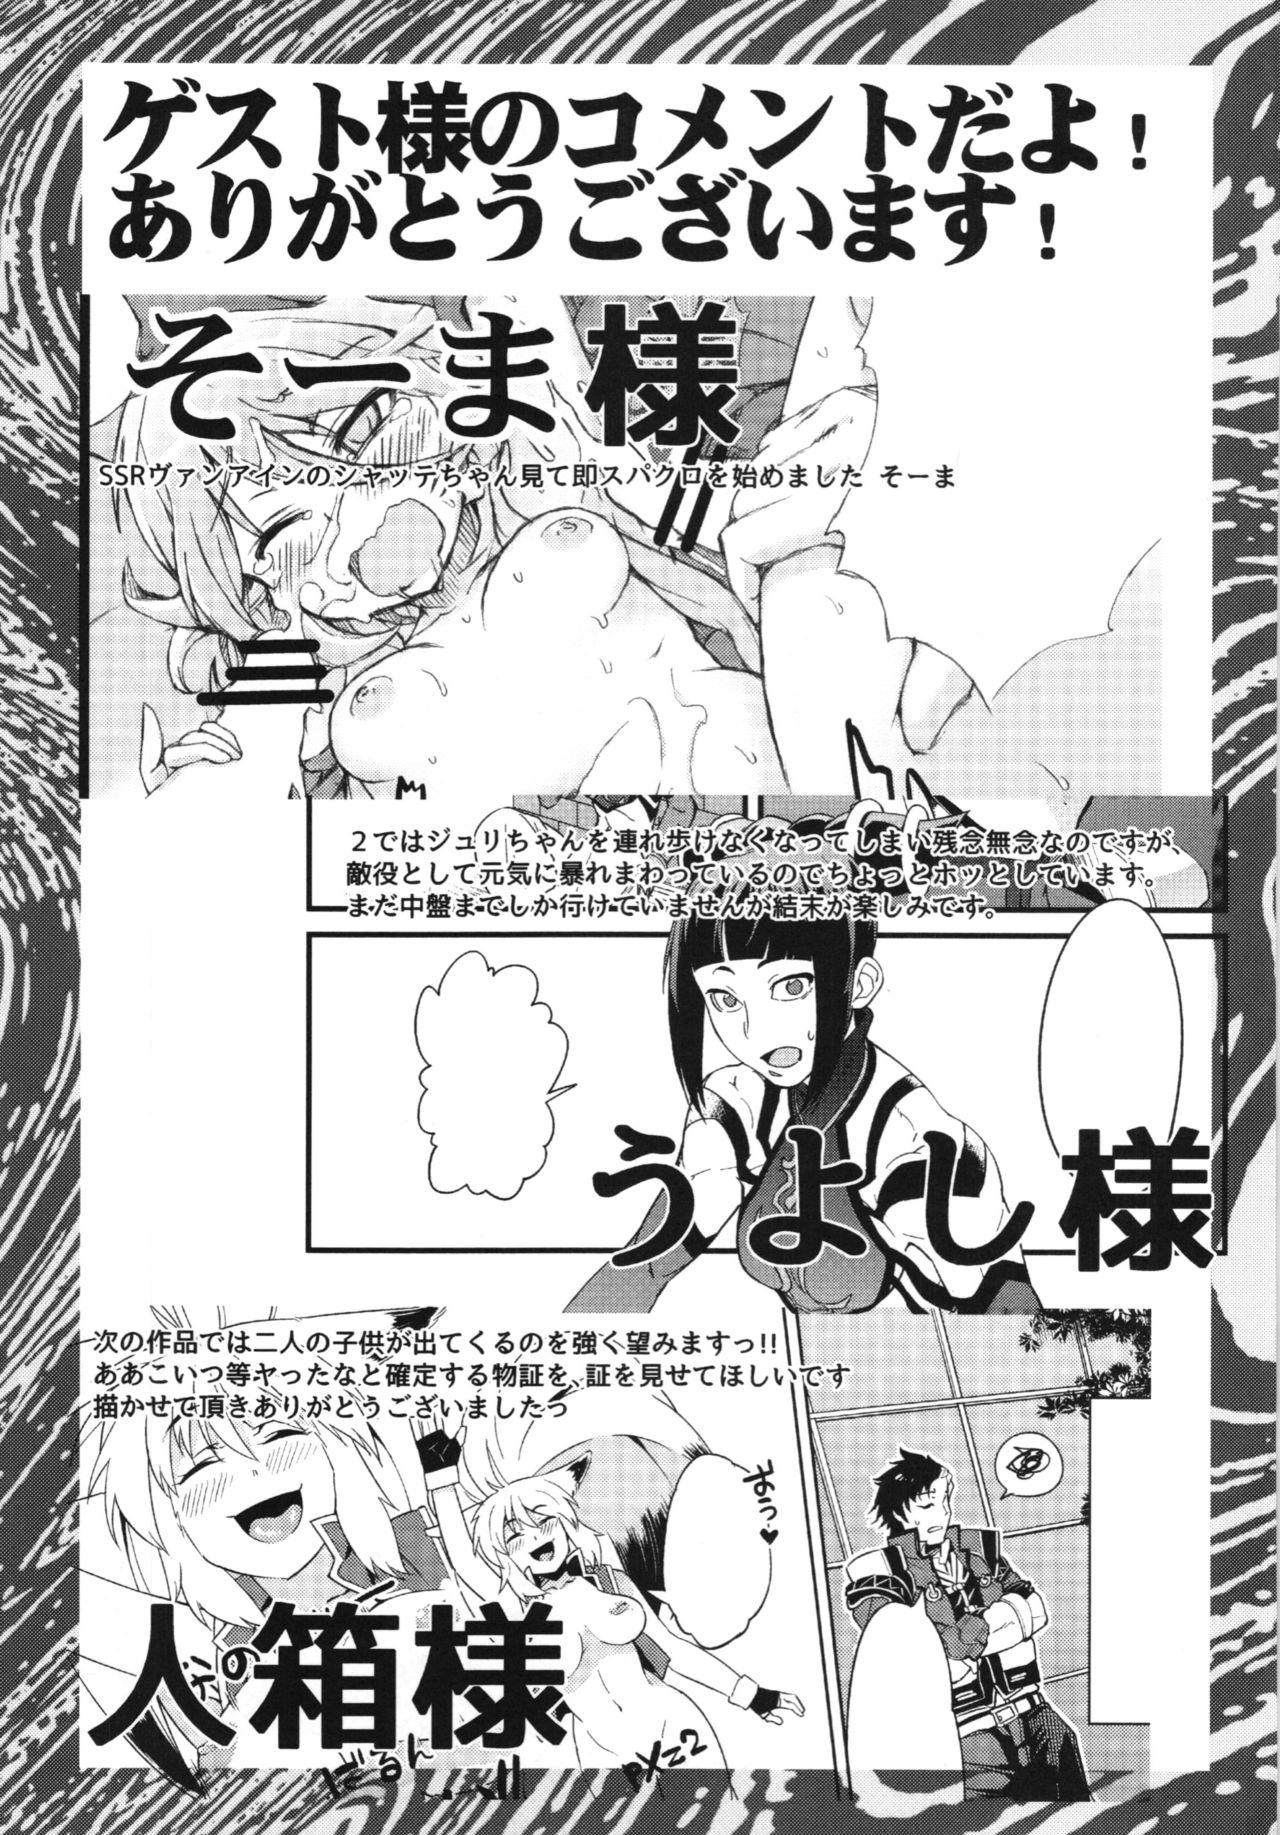 Alone Boku no Watashi no Super Bobobbo Taisen BXΩZ - Super robot wars Parties - Page 139